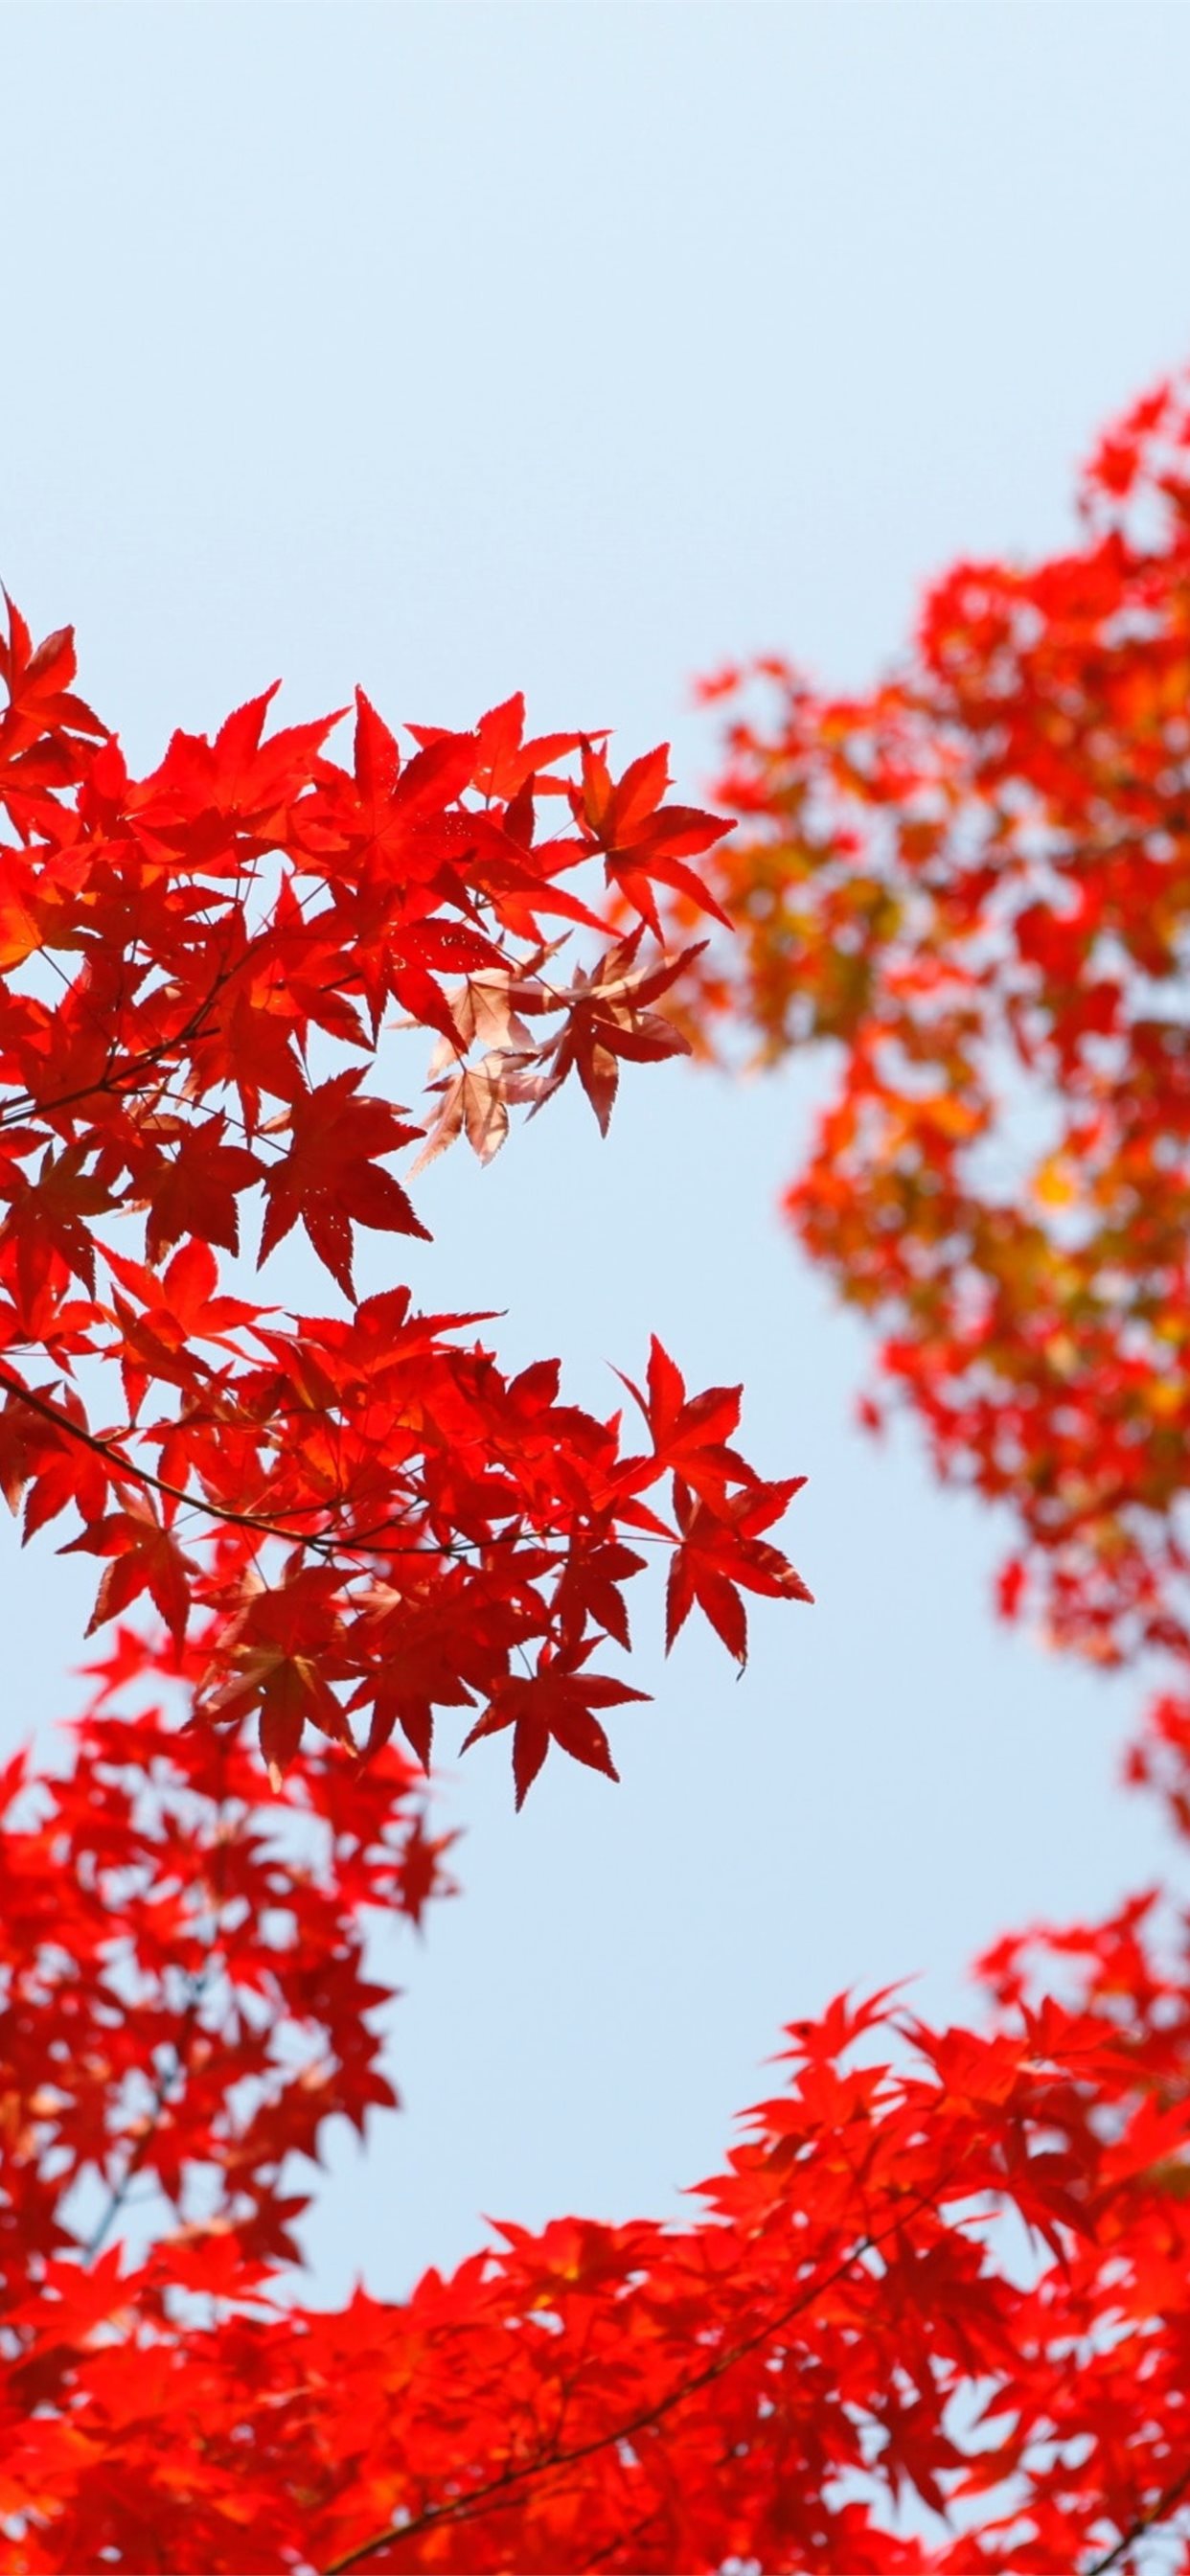 Autumn Red Leaf Orange iPhone Wallpaper